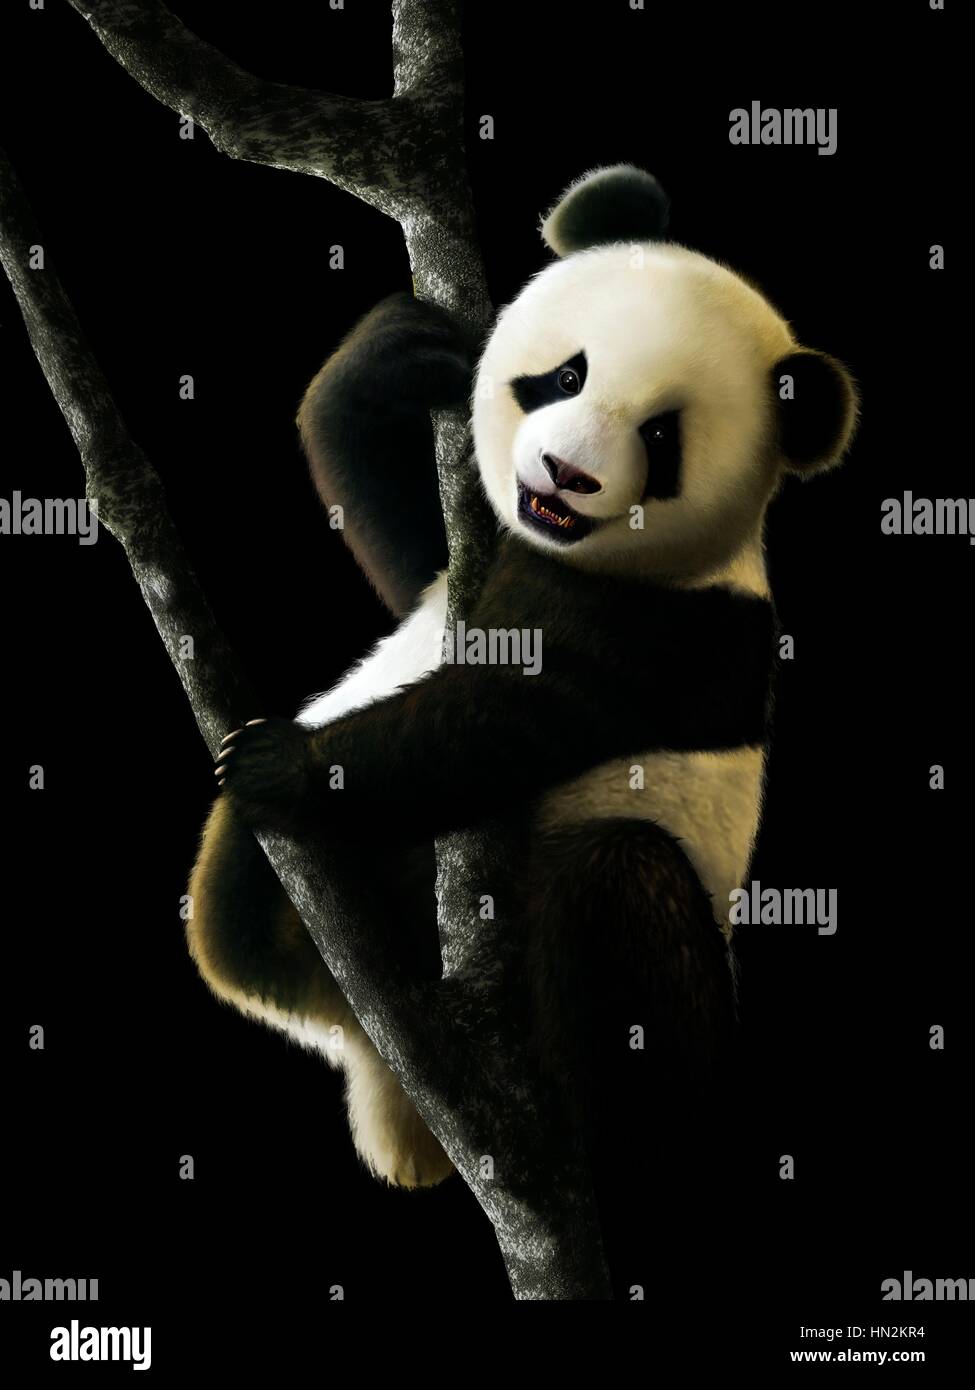 Die Grafik zeigt eine juvenile Giant Panda (Ailuropoda Melanoleuca) sitzt in einem Baum. Riesenpandas sind endemisch nach China und zentral-westlichen und südlichen Westchina heimisch sind, aber jetzt nur in wenige Bergketten von Zentral-China gefunden. Stockfoto